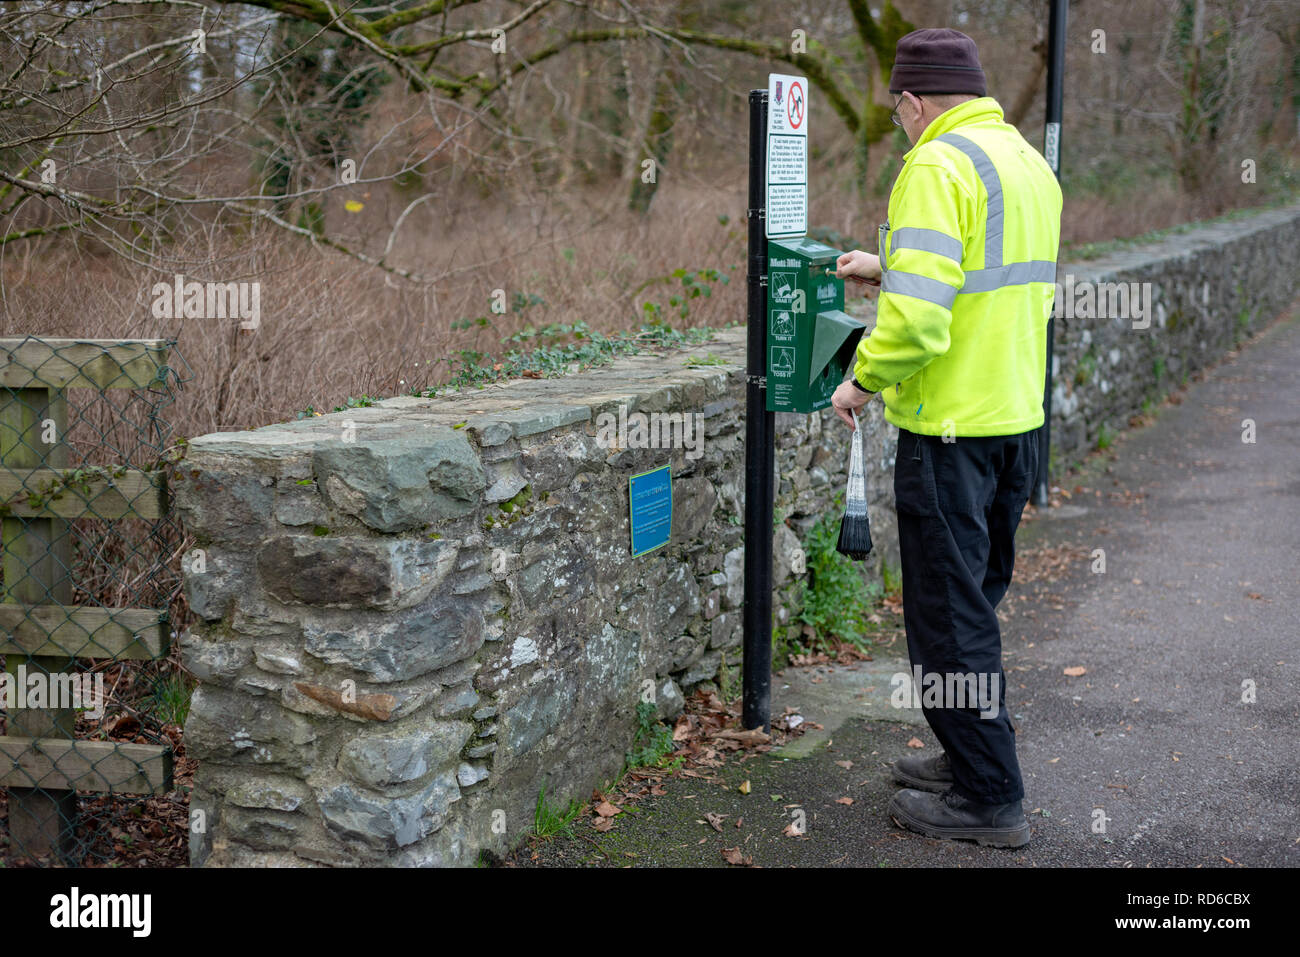 Lavoratore del consiglio a Mutt Mitt punto per i sacchi degradabili dei rifiuti del cane a Killarney, contea di Kerry, Irlanda. Dispenser MITT mutt. Foto Stock